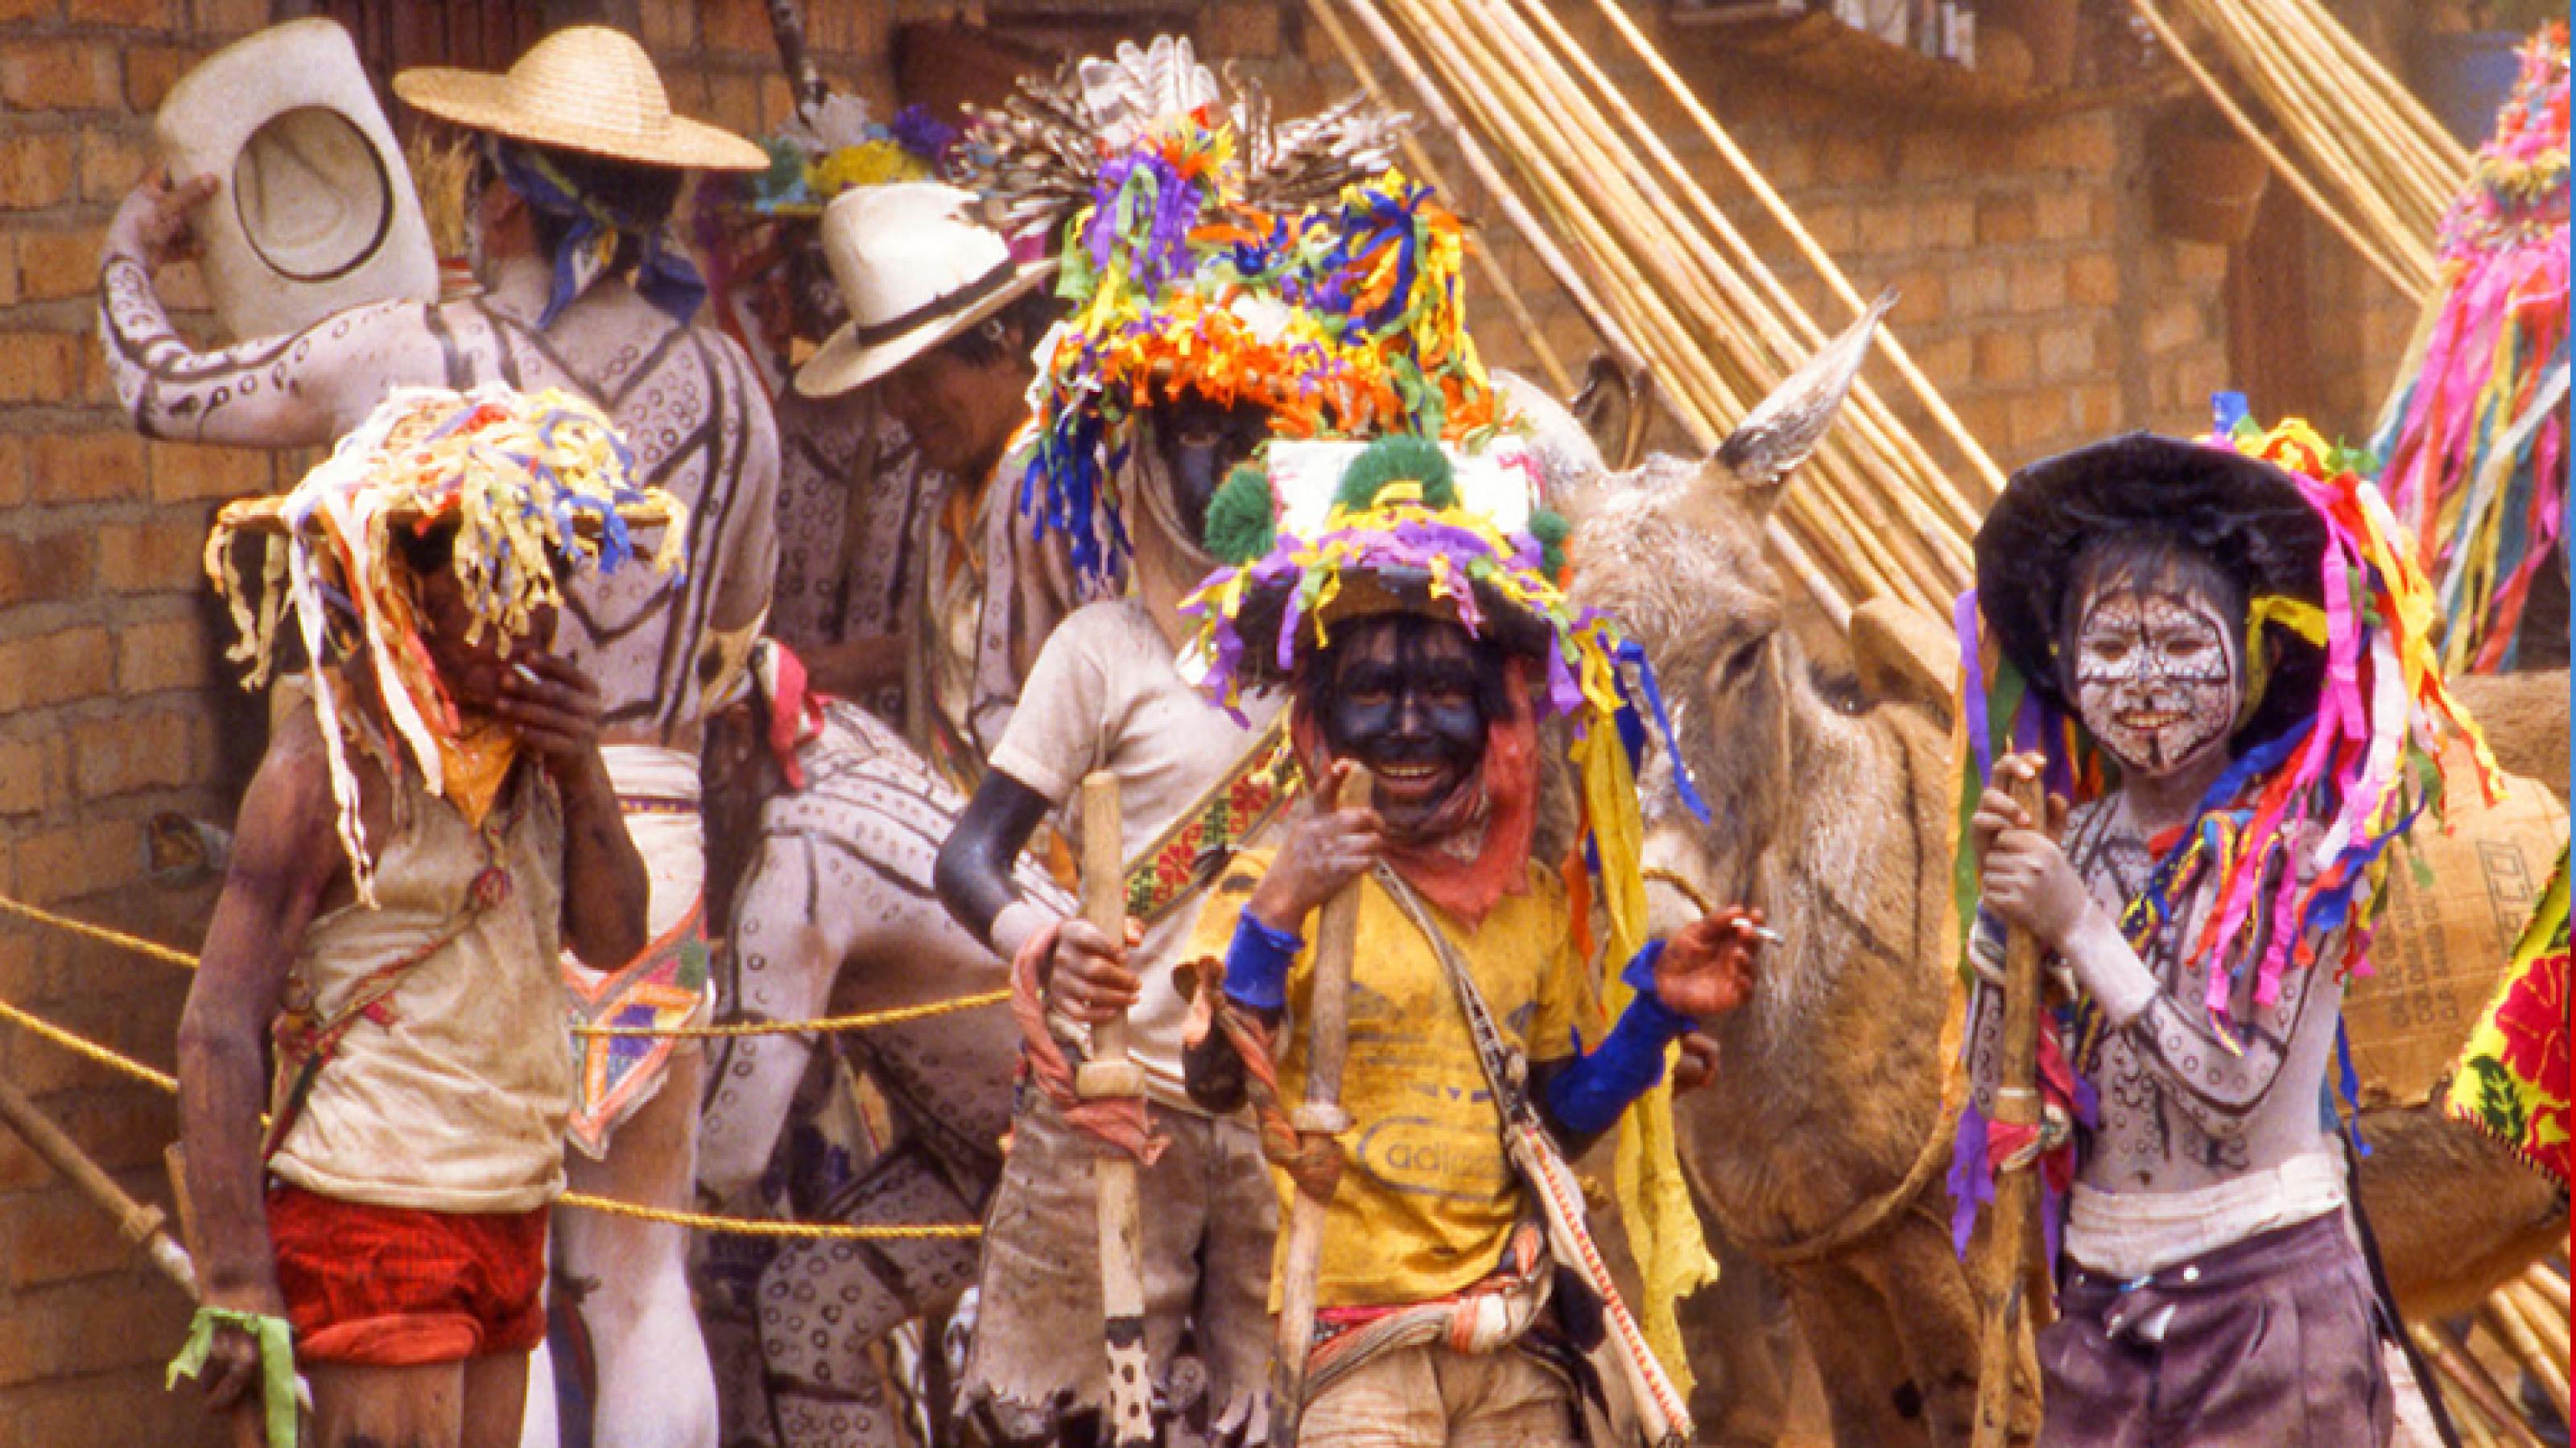 Straßenszene aus Mexiko City mit bunt gekleideten Feiernden. Dazwischen Esel und Sombrero-Verkäufer